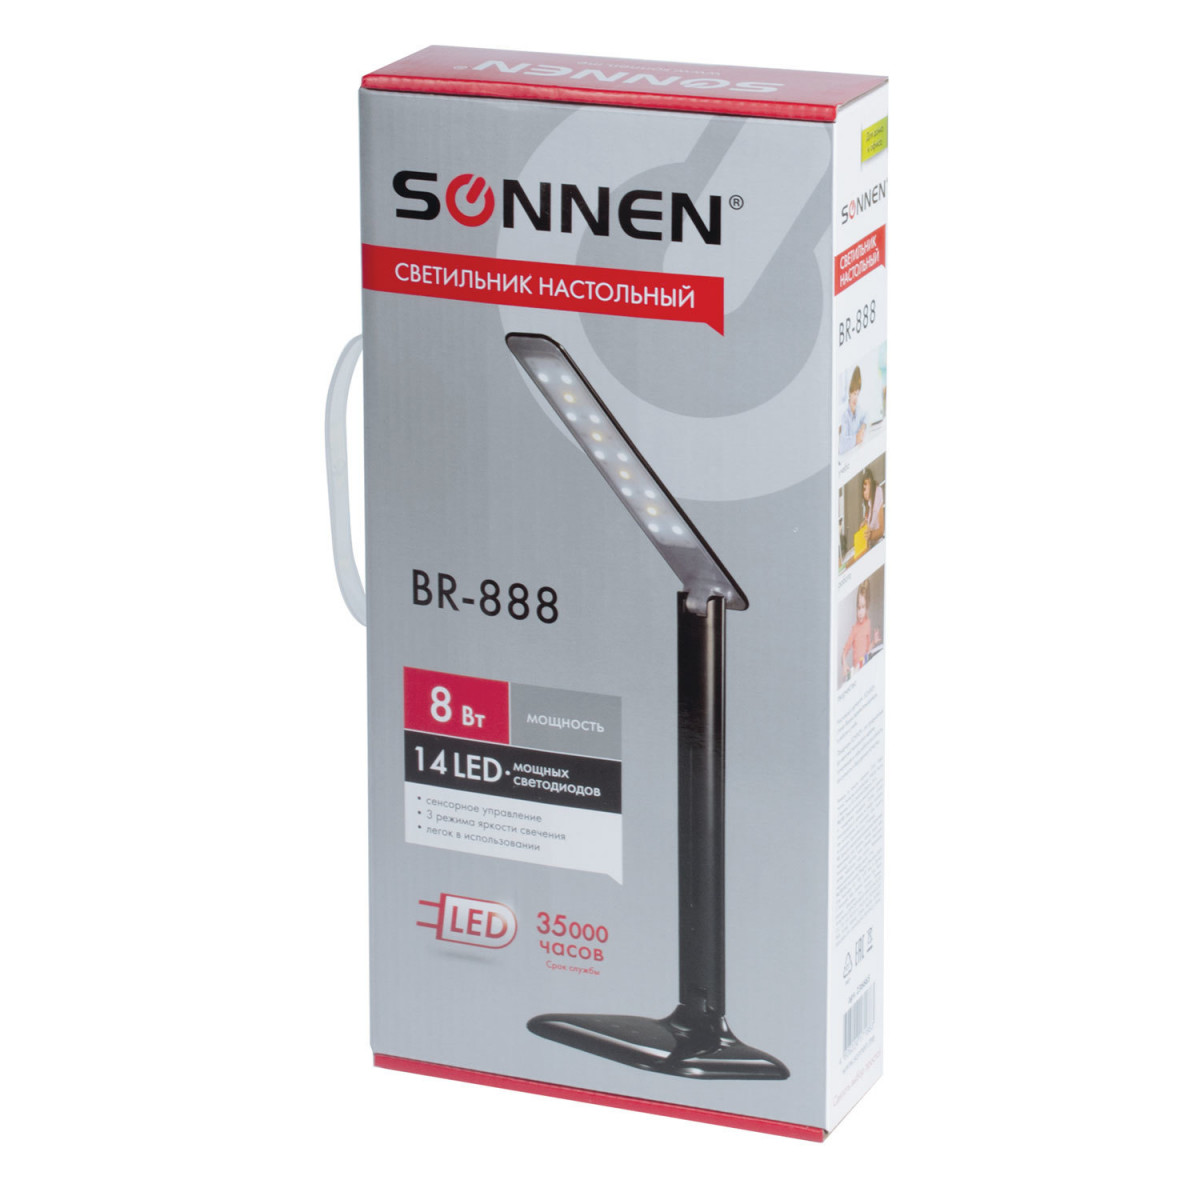 Светильник настольный SONNEN BR-888, на подставке, светодиодный, 8 Вт, черный, 236665 (арт. 236665)